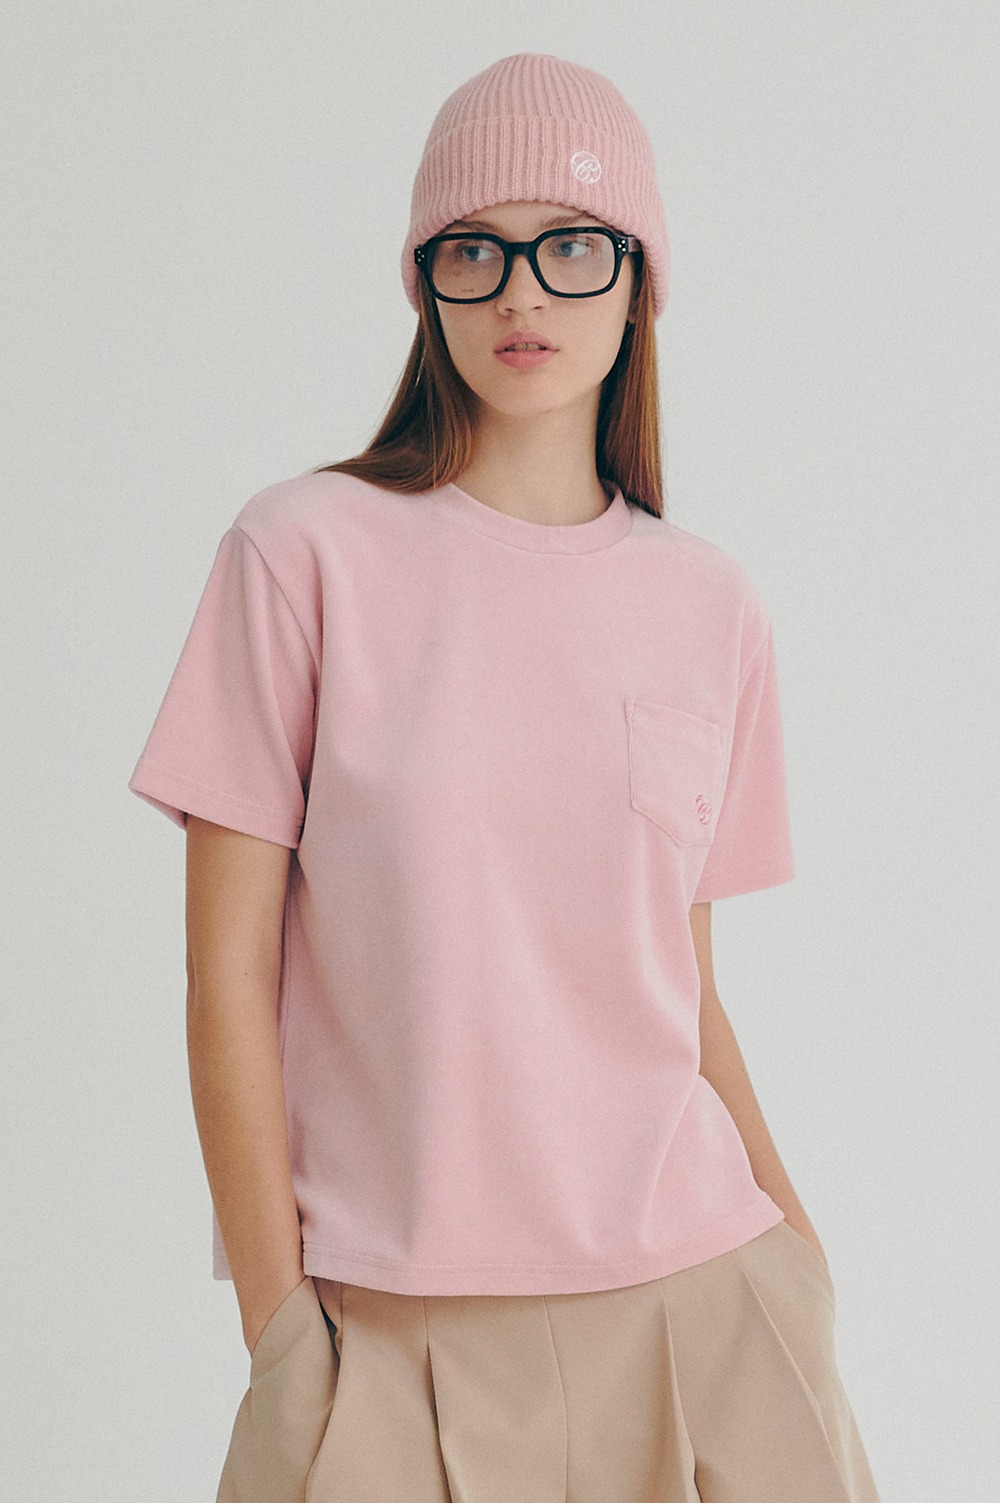 clove - [22FW clove] Velour Pocket T-Shirt_Women (Pink)